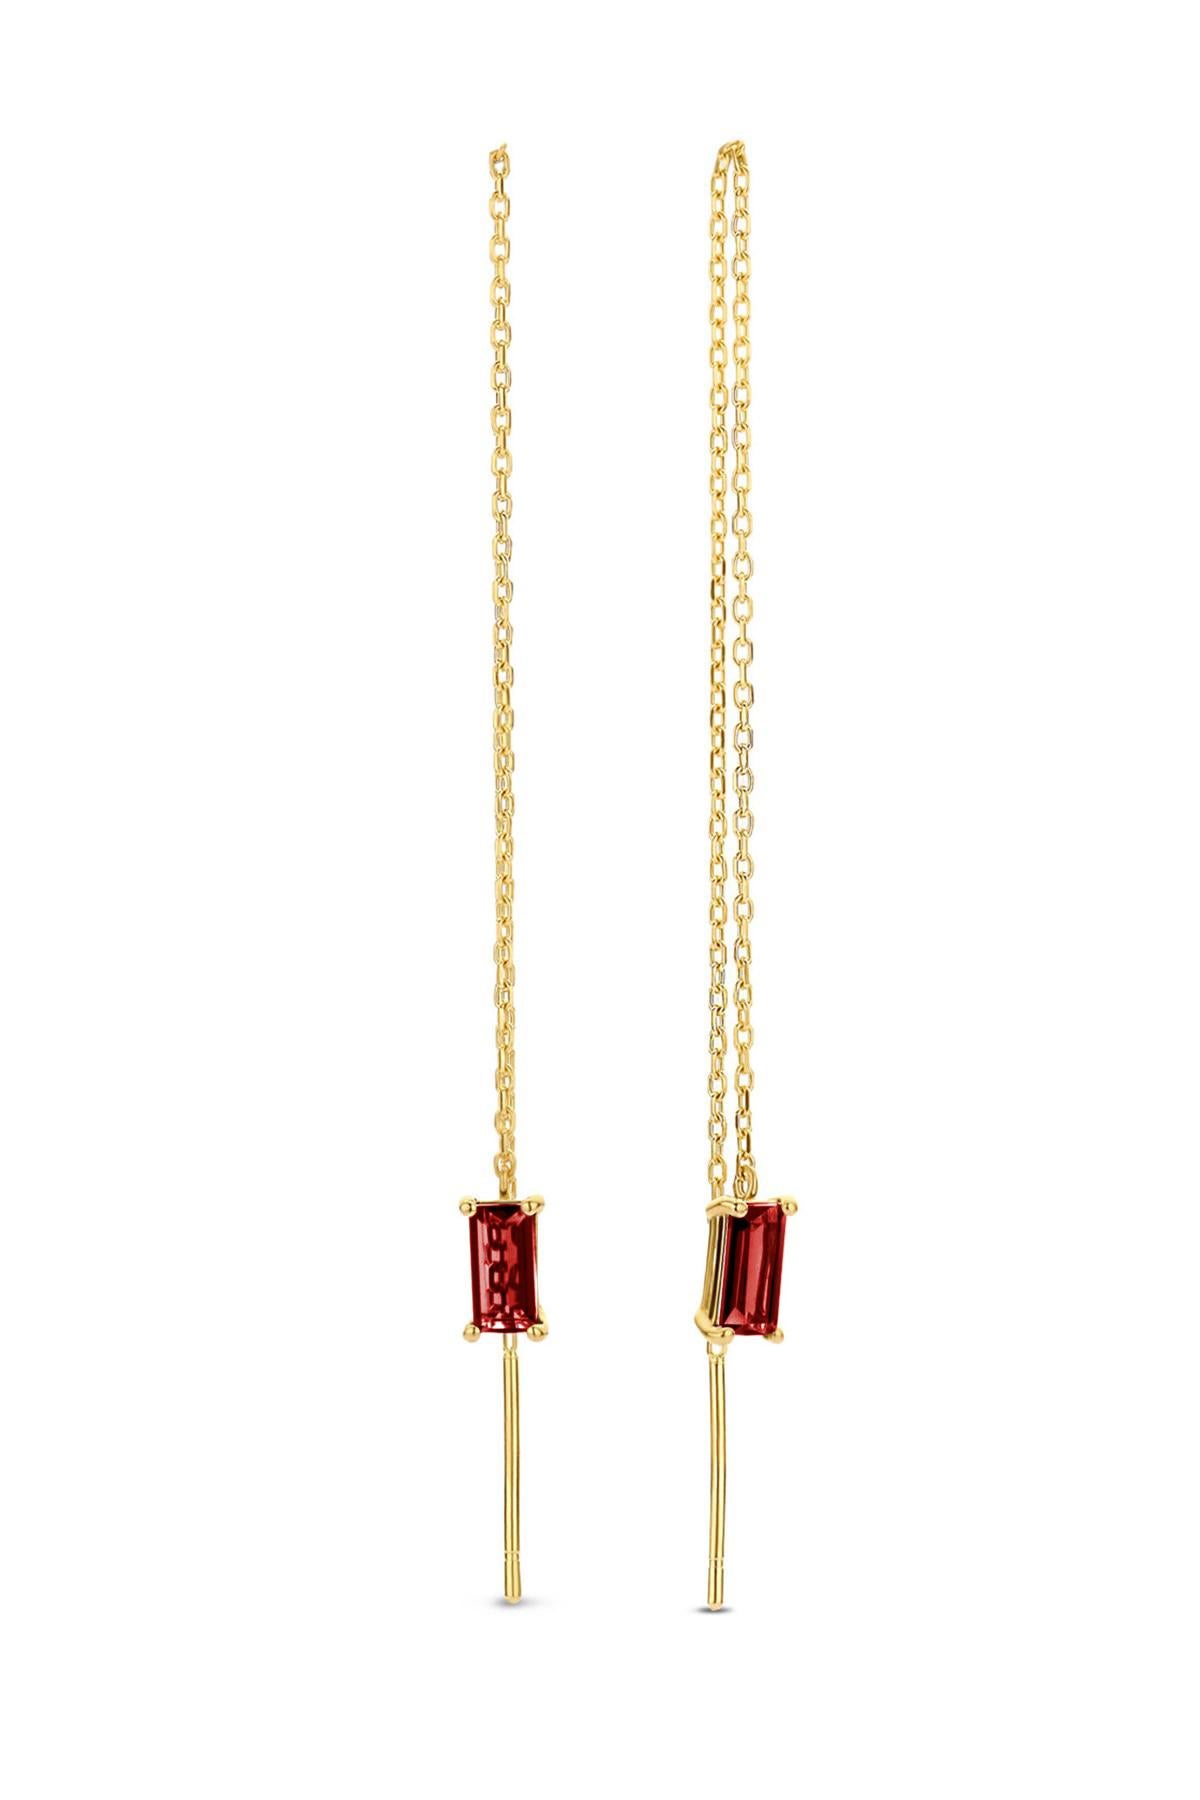 Women's or Men's 14k Solid Gold Drop Earrings with Garnet, Chain Gold Earrings For Sale